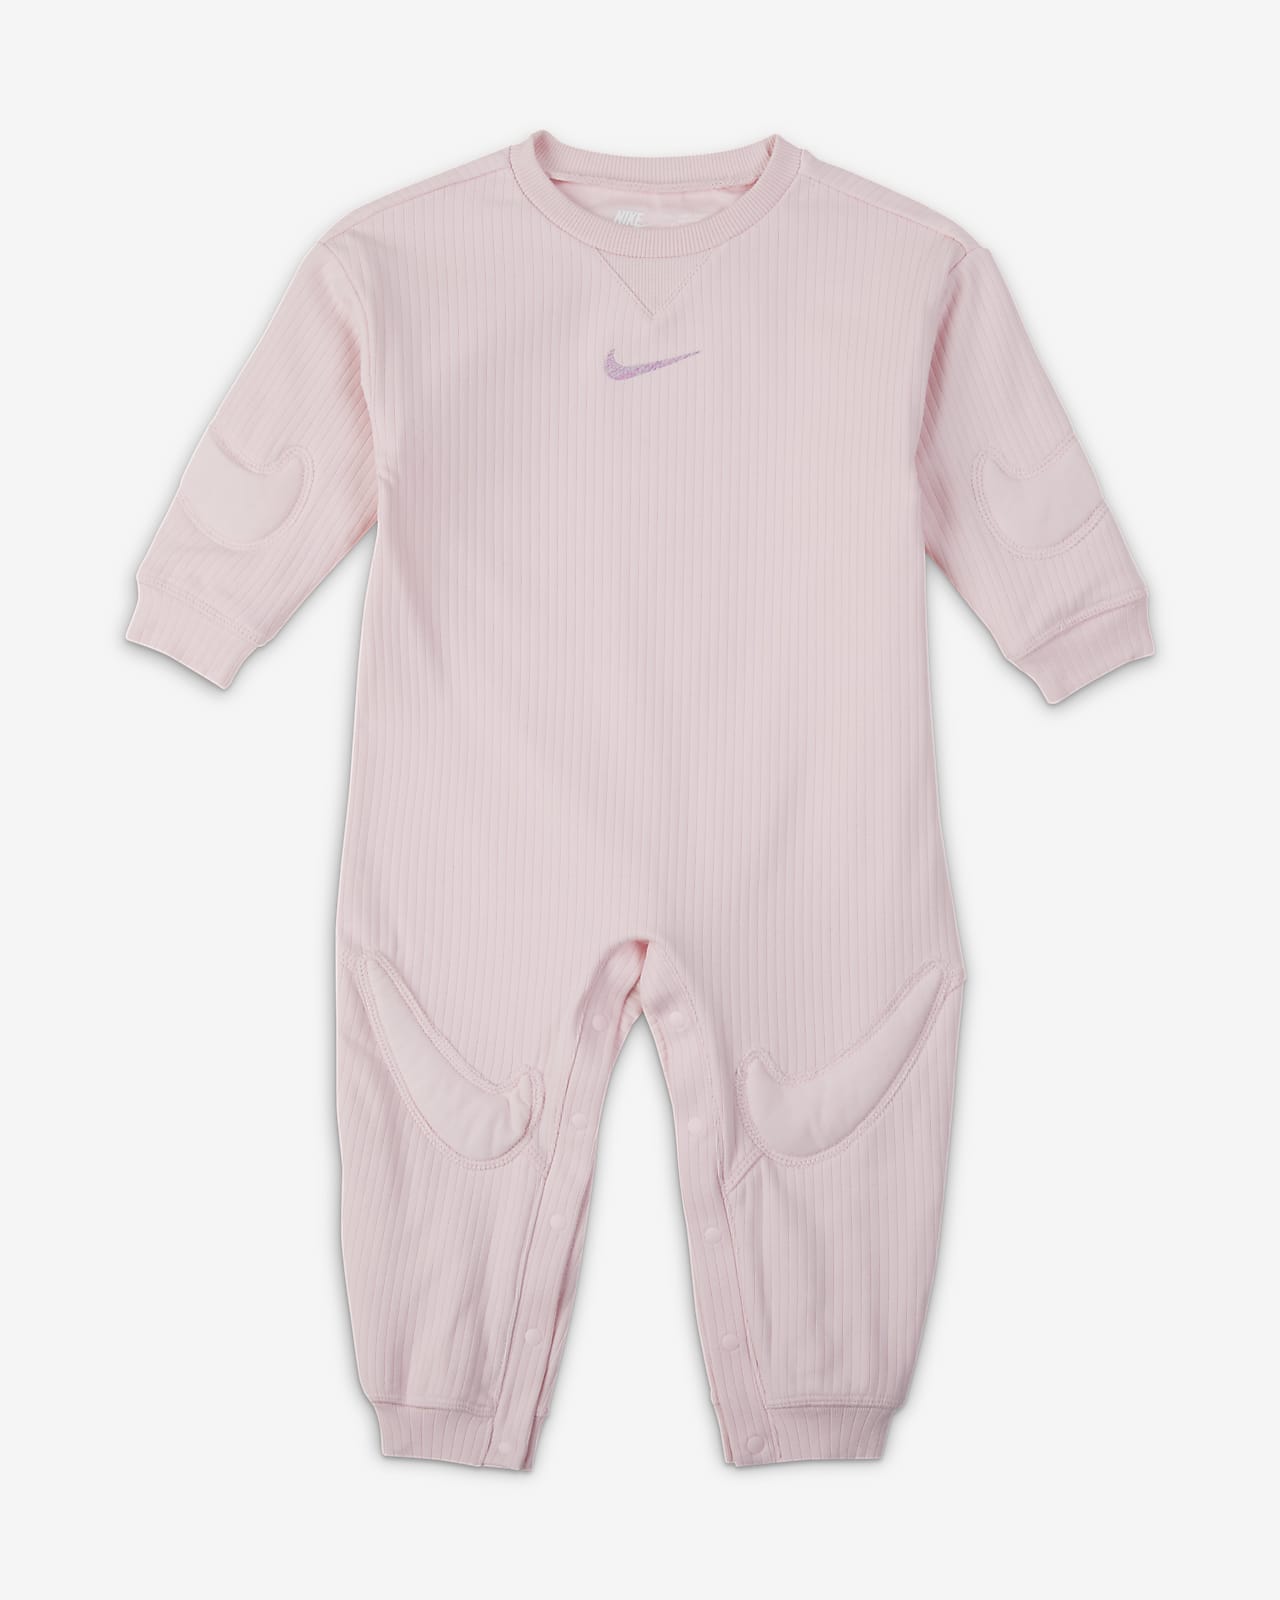 Combinaison Nike « Ready, Set » pour bébé